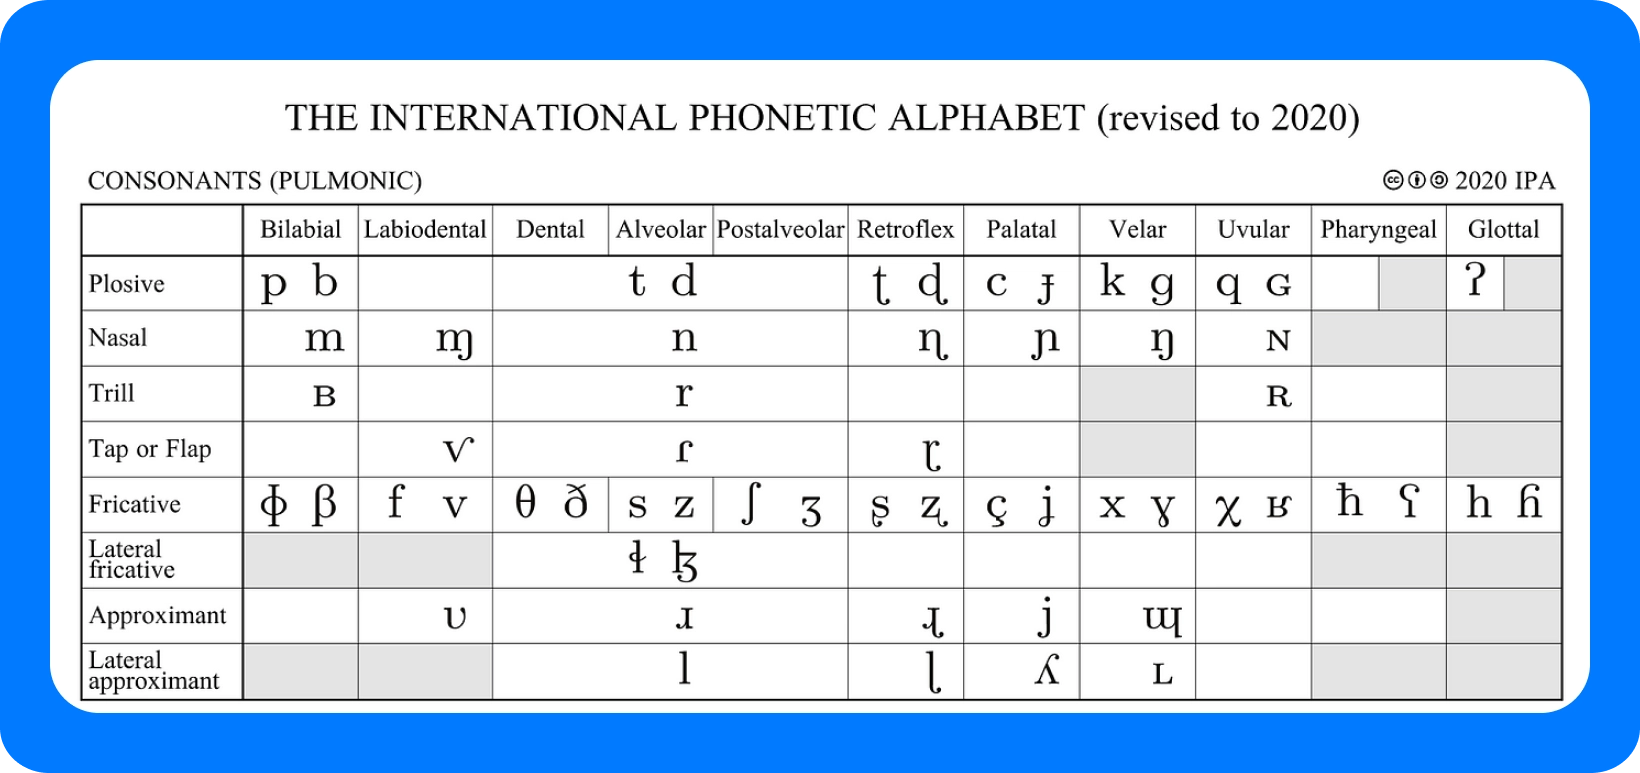 Tableau de l’alphabet phonétique international des consonnes, révisé en 2020, détaillant les points d’articulation.